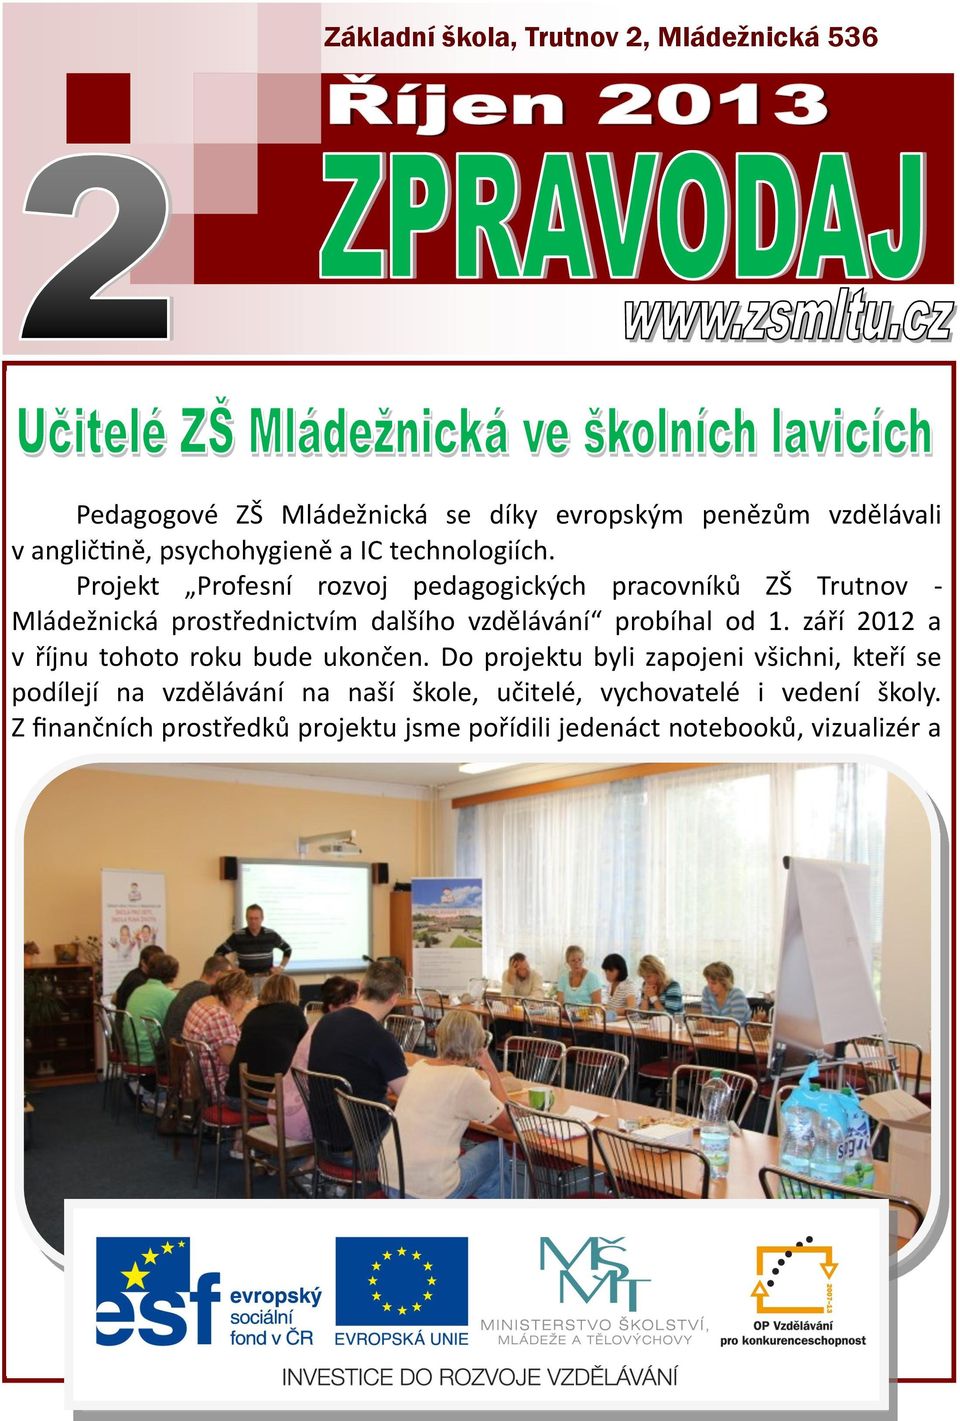 Projekt Profesní rozvoj pedagogických pracovníků ZŠ Trutnov - Mládežnická prostřednictvím dalšího vzdělávání probíhal od 1.